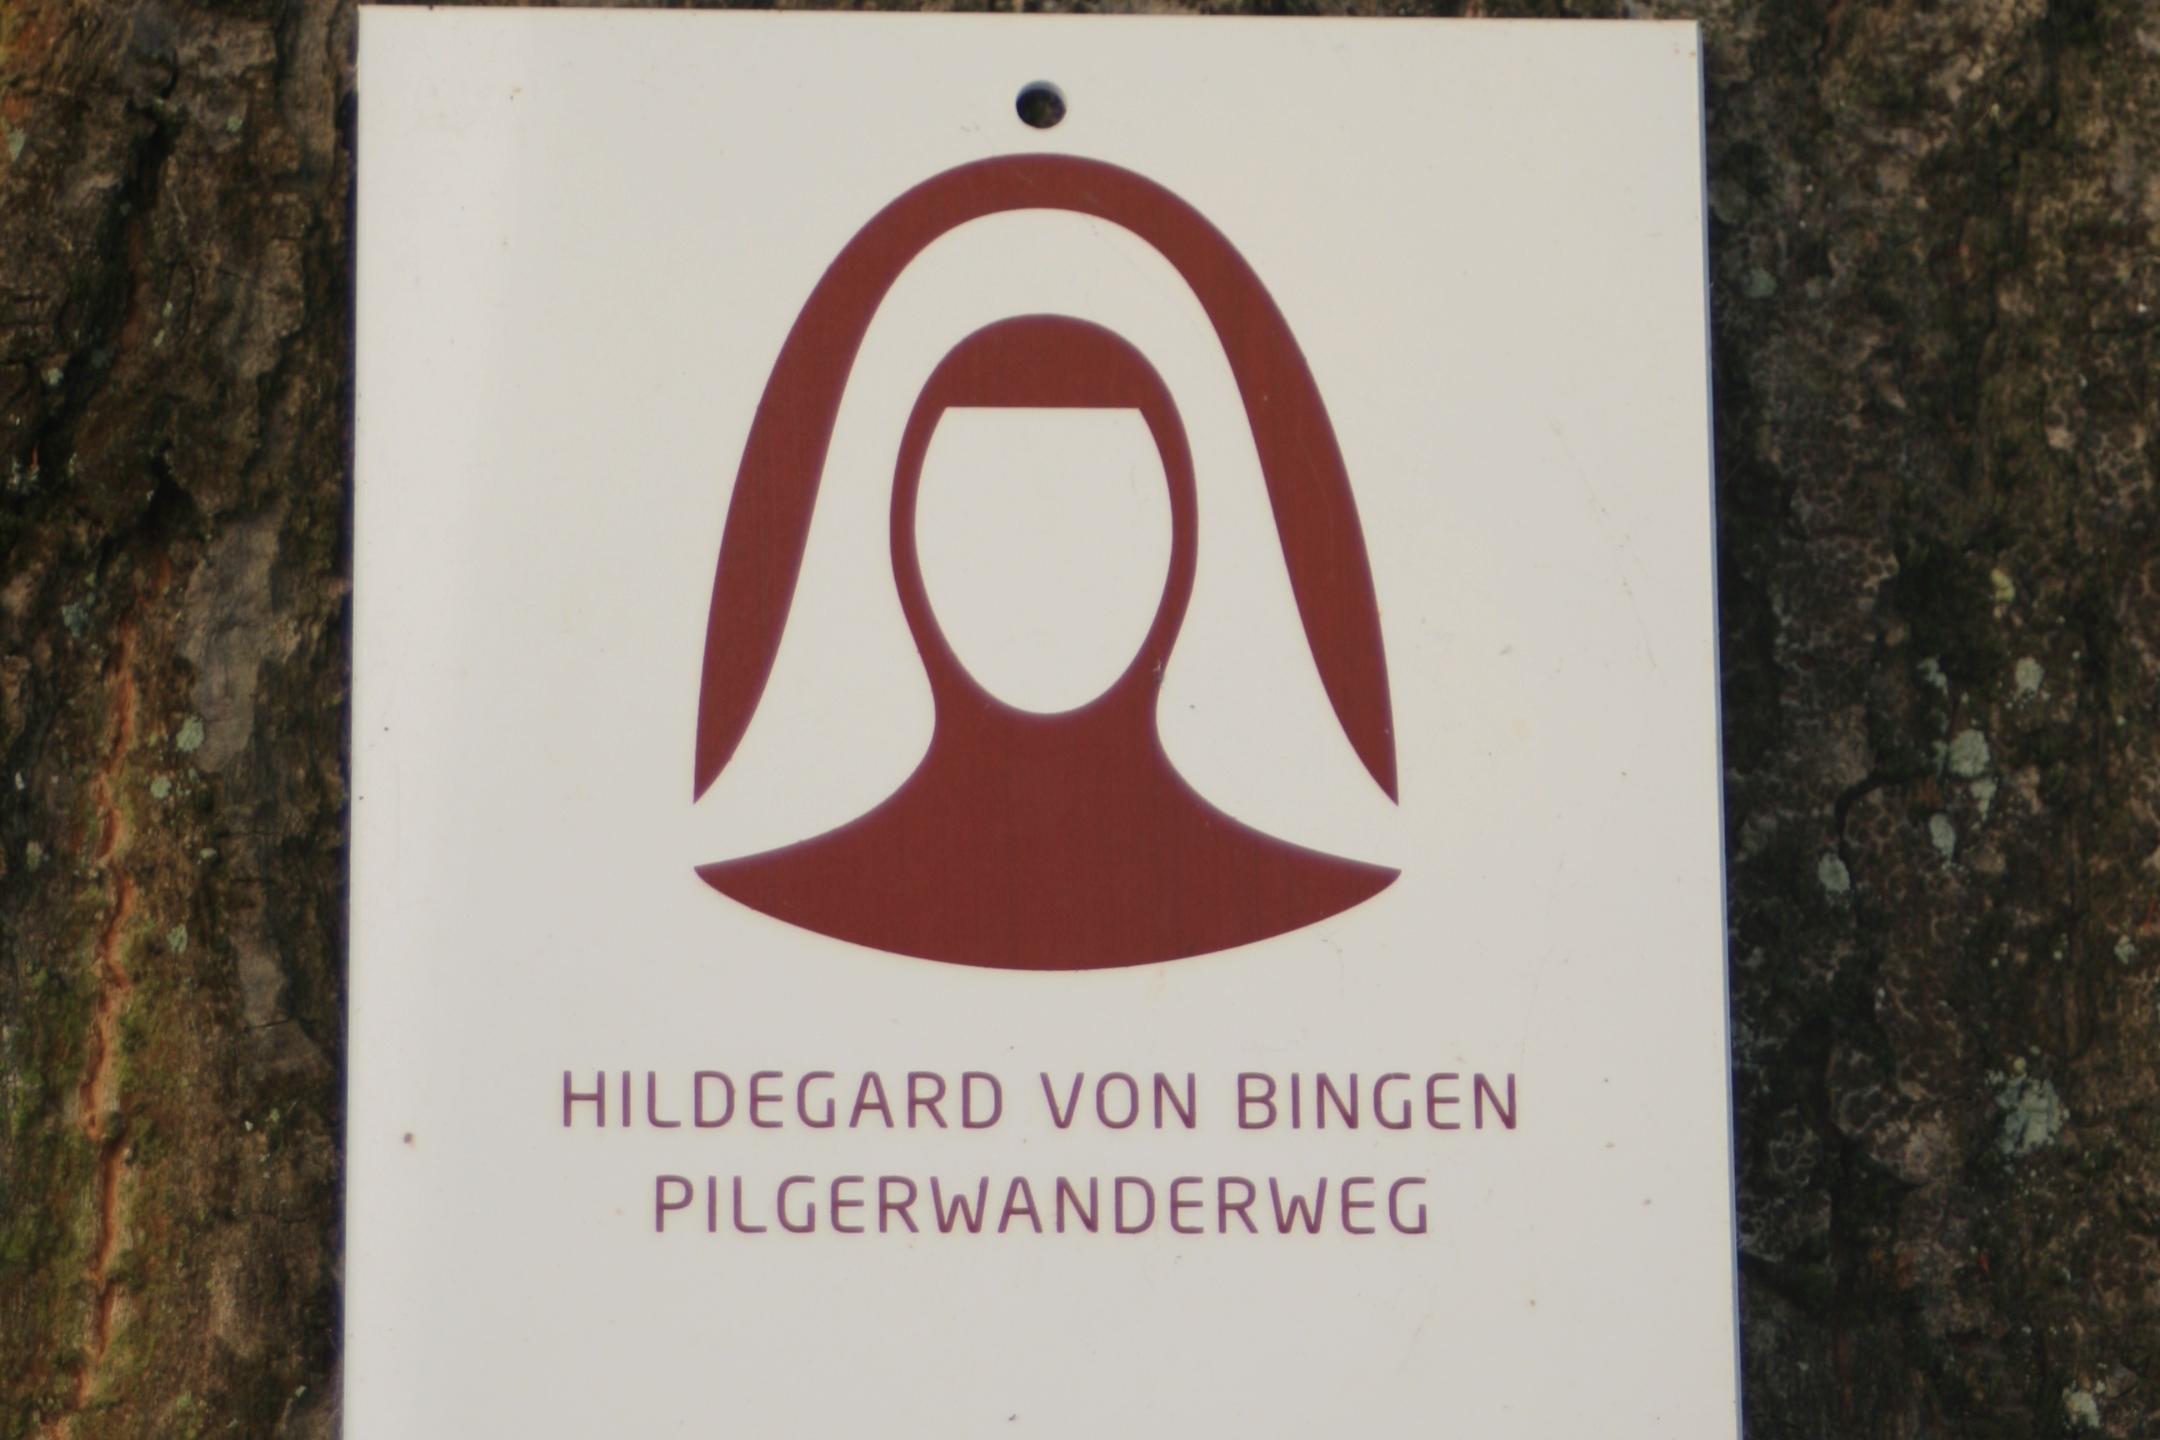 Das BIld zeigt das Logo des Hildegard-Weg an einem Baum